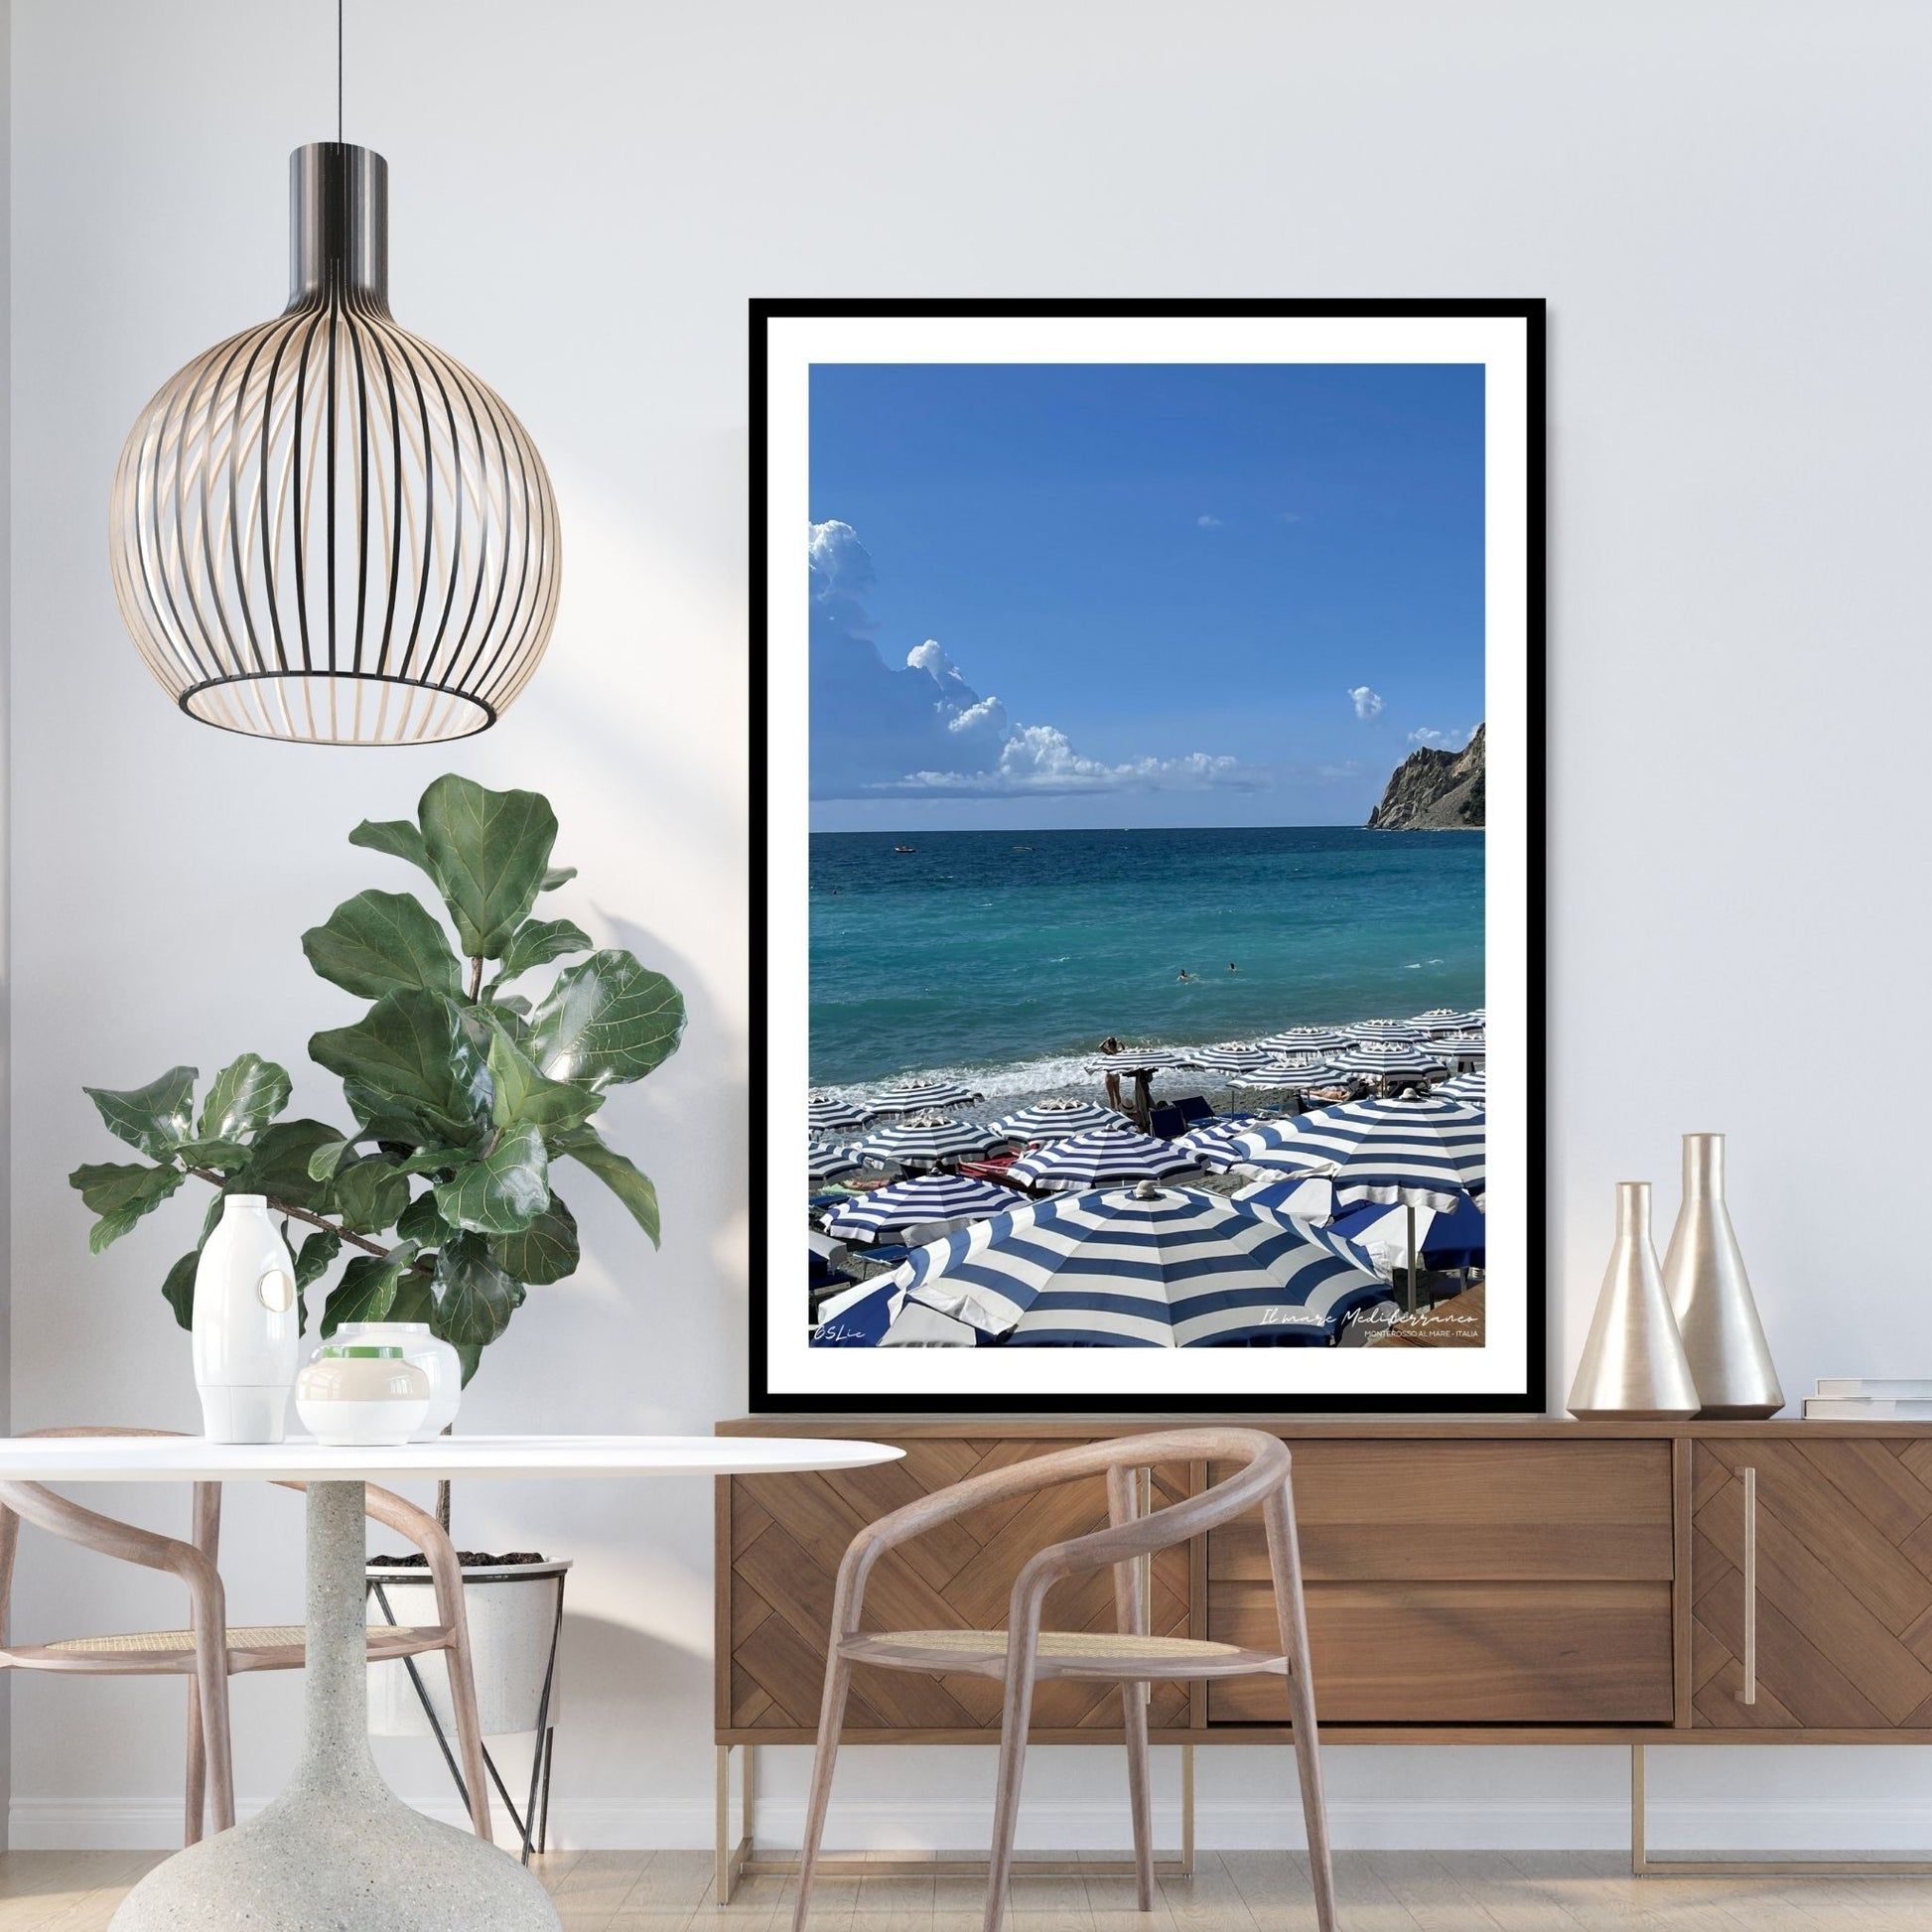 Motiv fra Montereosso al Mare, en av de fem byene i Cinque Terre ved Liguriakysten i Italia. Bildet viser blått middelhav og himmel som helt ned i vannet i horisonten. På høyre side skimtes noen klipper. På sranden er det tett i tett med blå og hvitstripete parasoller. Bildet vise miljøbilde av plakat i sort ramme.